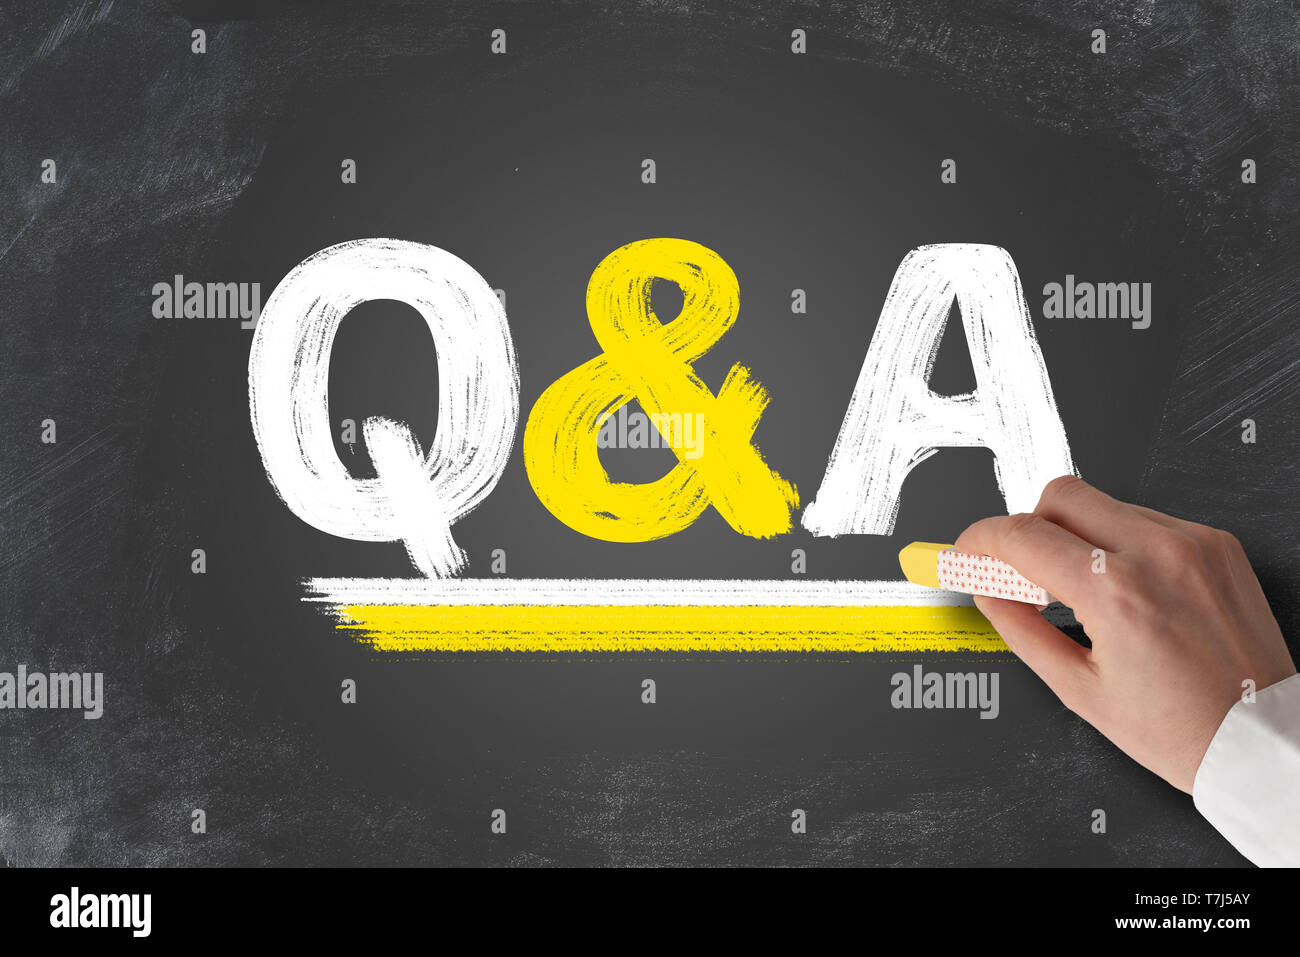 Terme Q et A, questions et réponses, written on blackboard Banque D'Images